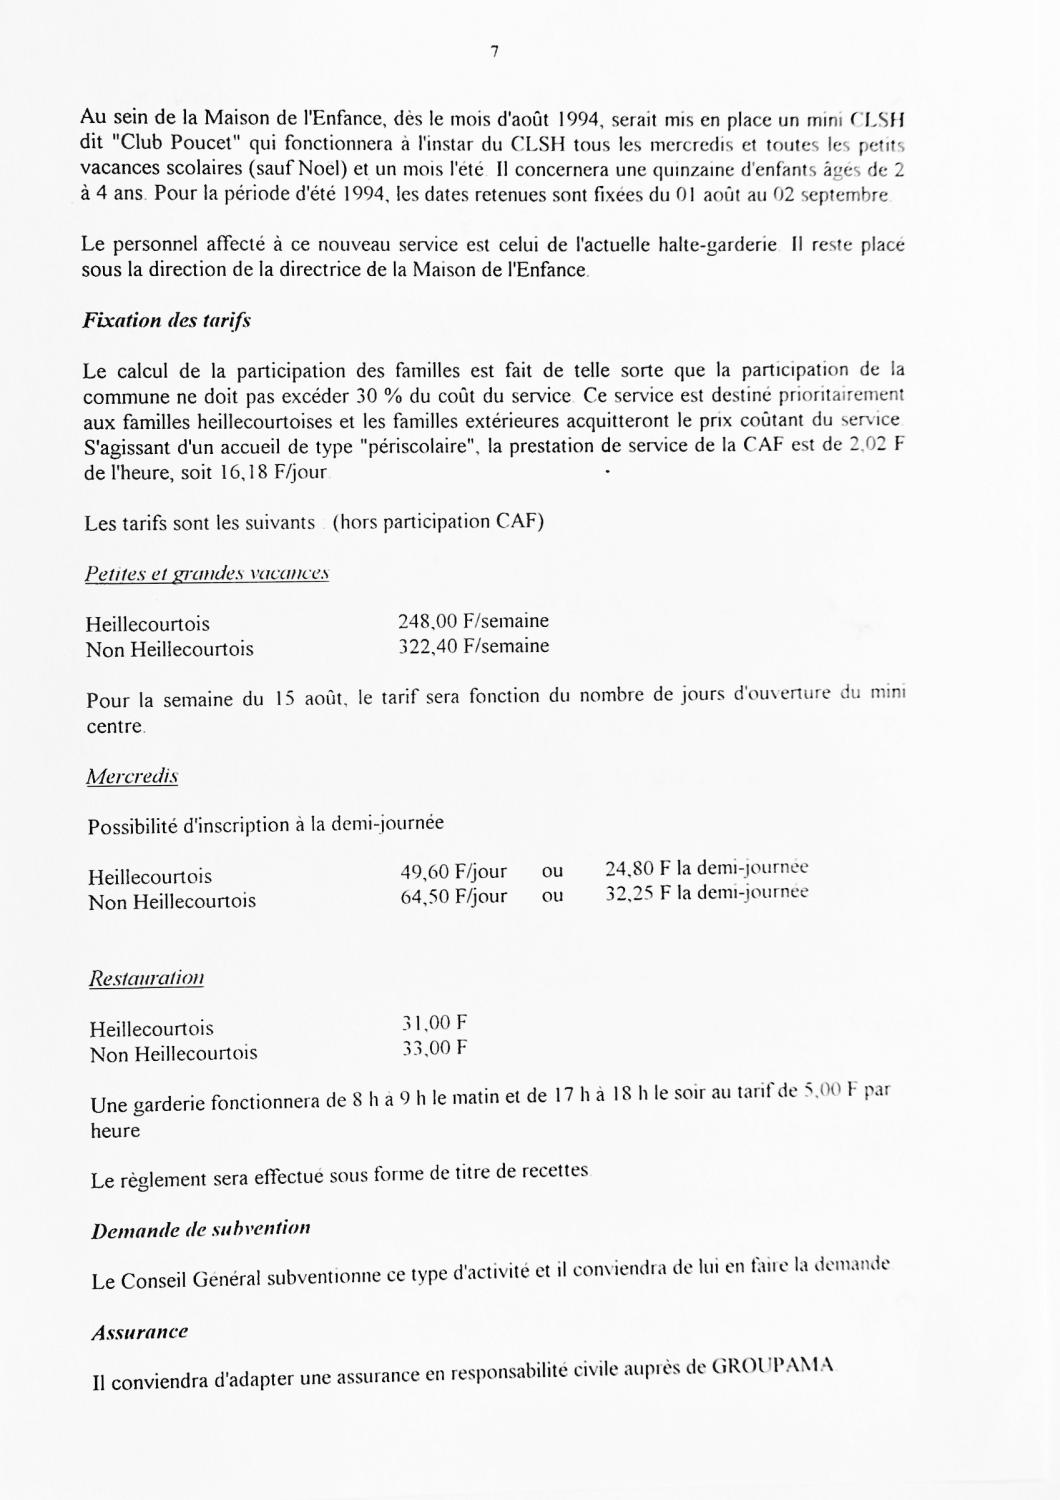 Feuillet_096A_1992-1994.jpg